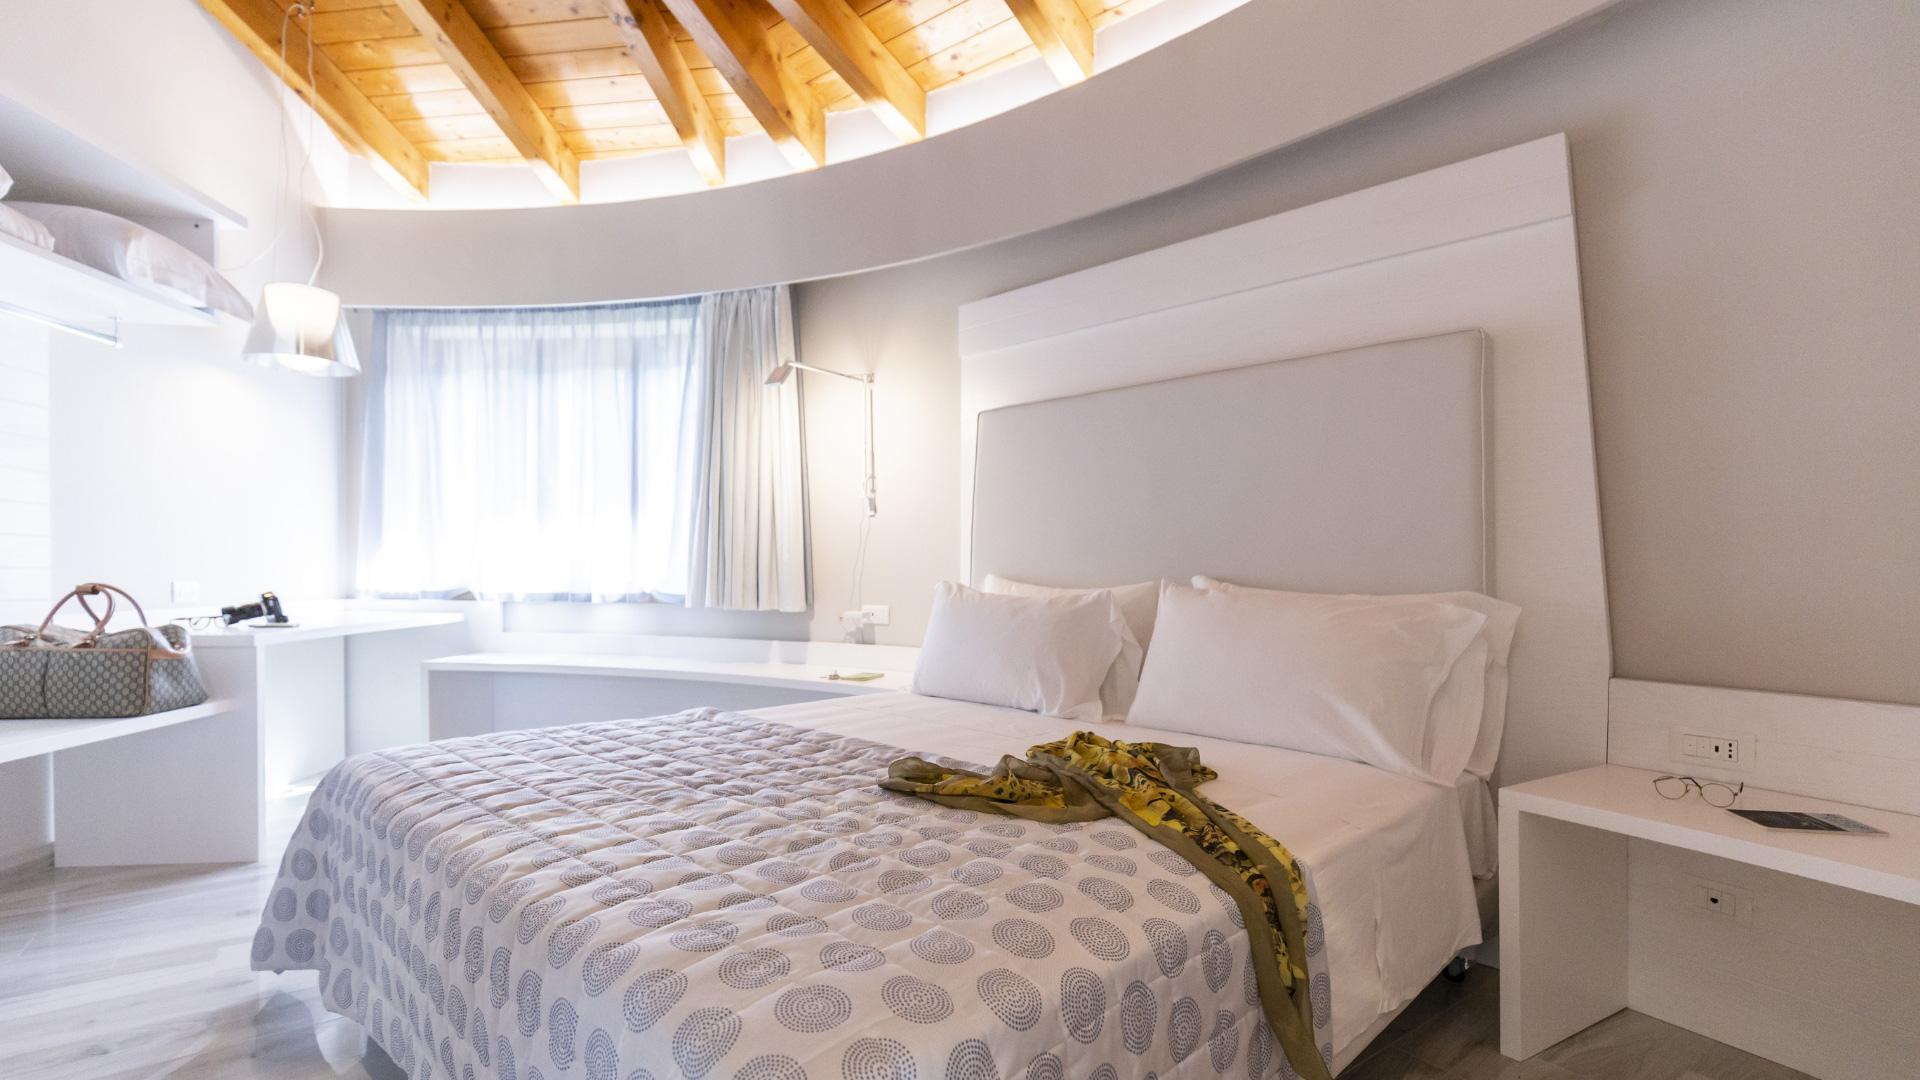 Camera moderna con letto matrimoniale, soffitto in legno e arredamento bianco.